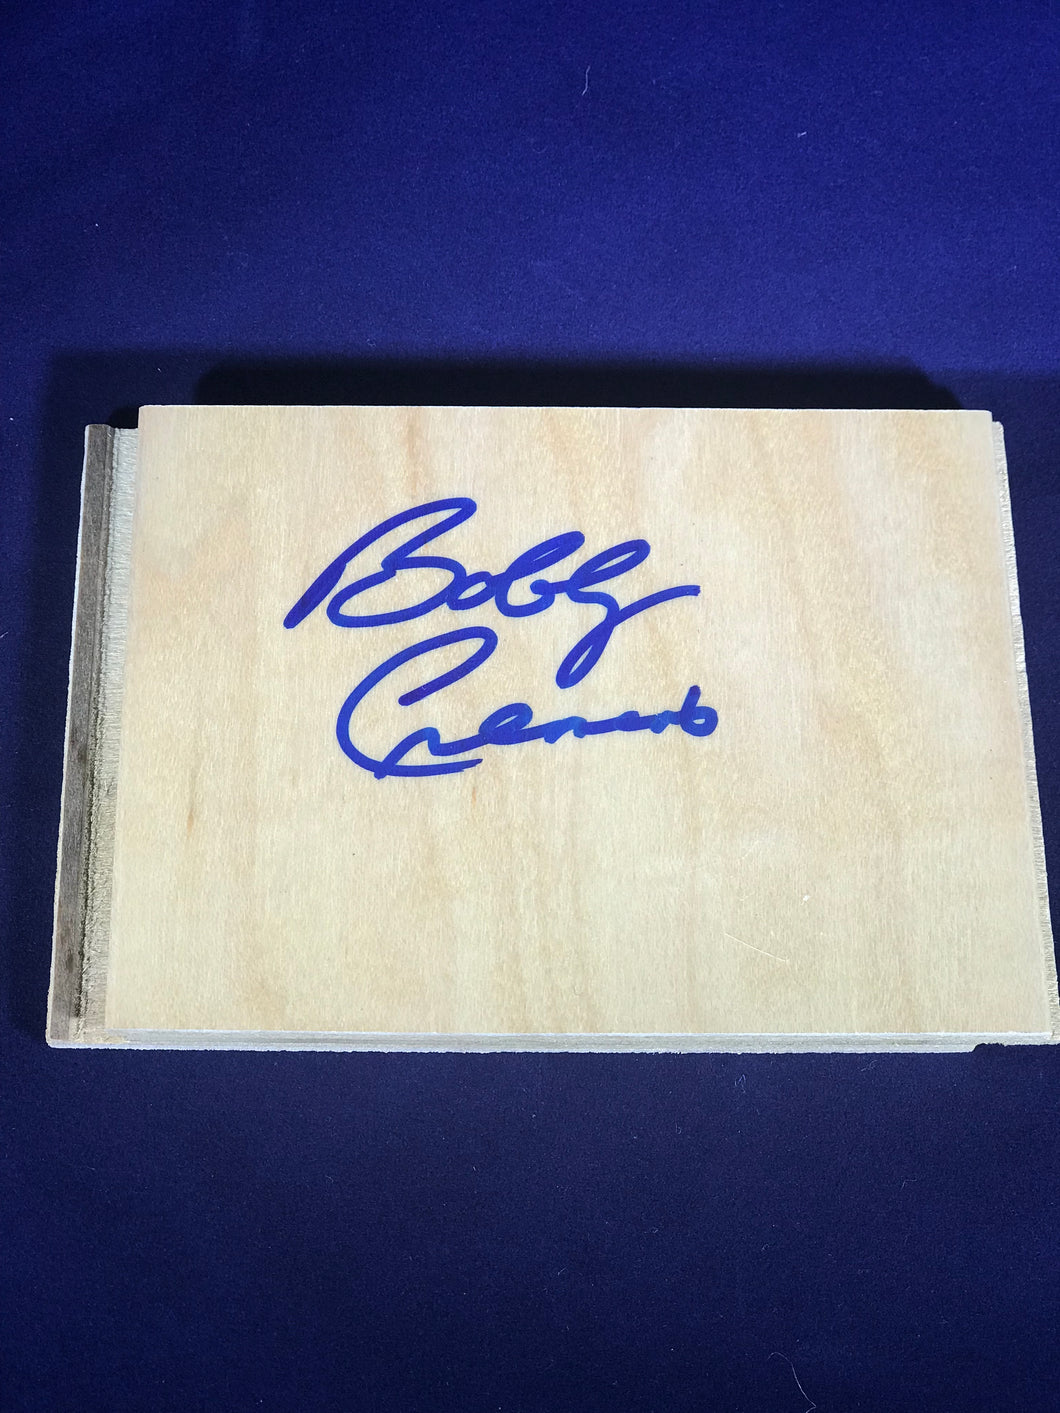 Coach Bobby Cremins autographed FLOOR TILE